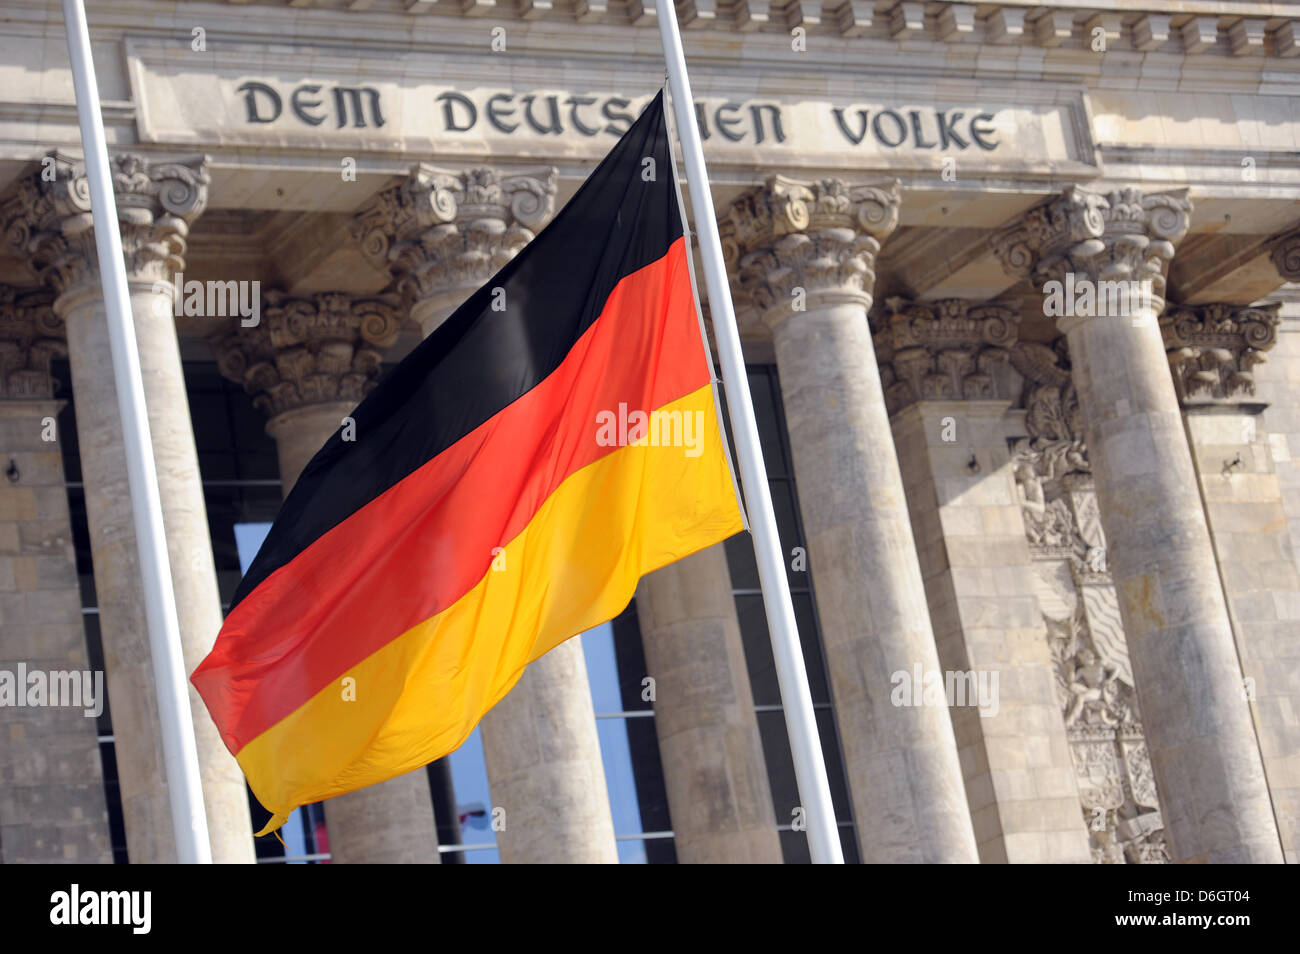 Die Deutsche Flagge weht am Donnerstag (23.02.2012) vor dem Reichstag di Berlino auf Halbmast. Bundesweit erinnerten Menschen mit einer Schweigeminute an die zehn Opfer einer Neonazi-Zelle. Damit sollte auch ein segnale sichtbares gegen Rechts gesetzt werden. Foto: Maurizio Gambarini dpa/lbn +++(c) dpa - Bildfunk+++ Foto Stock